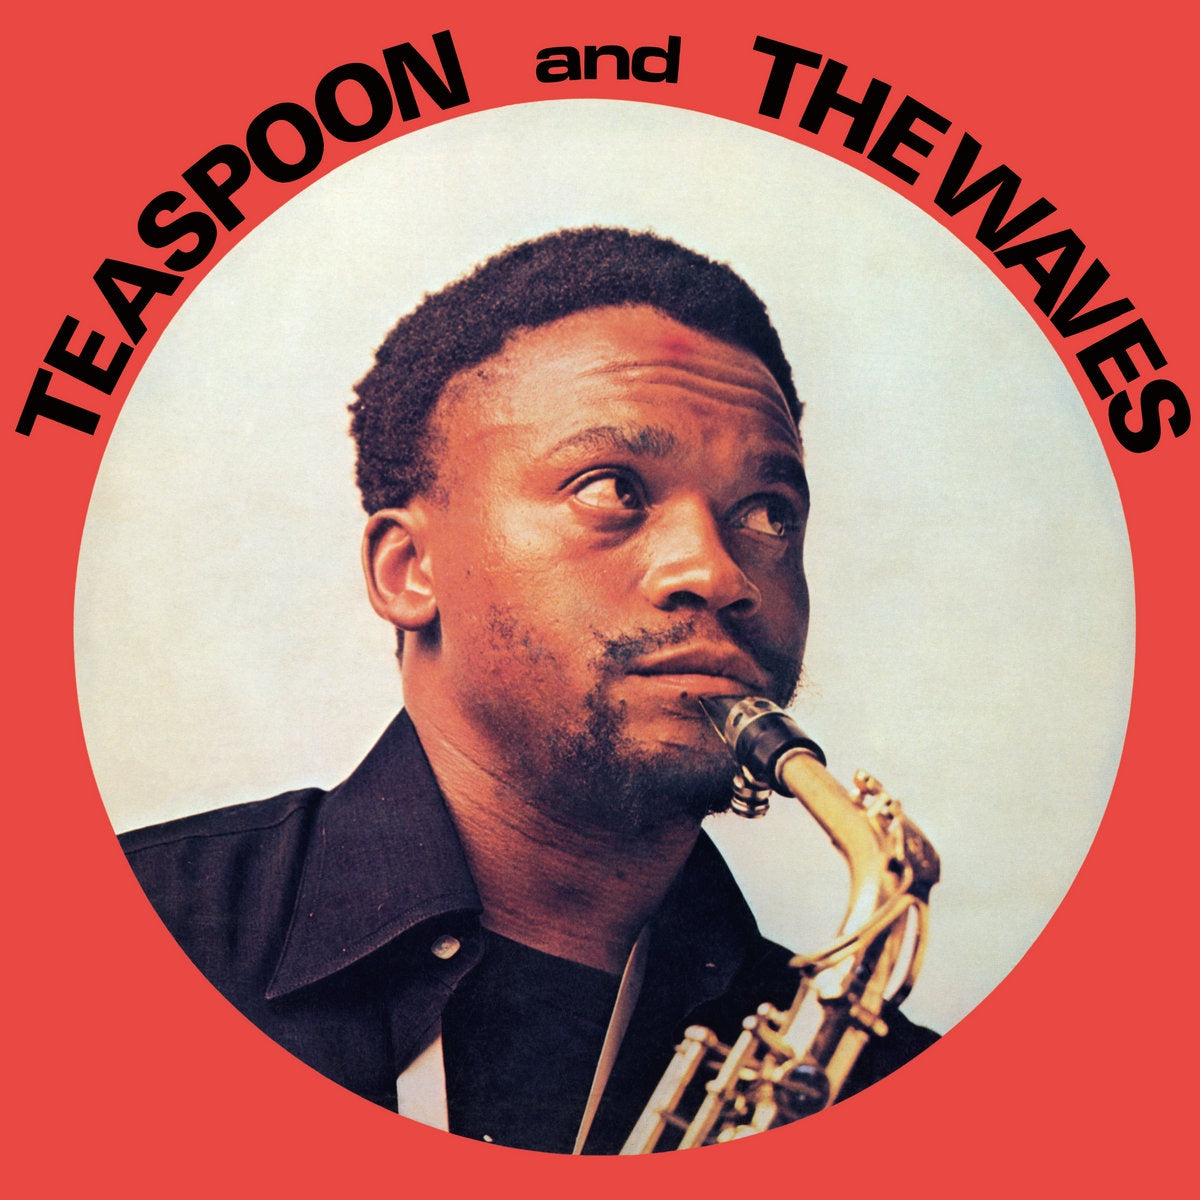 Teaspoon & The Waves – Teaspoon & The Waves